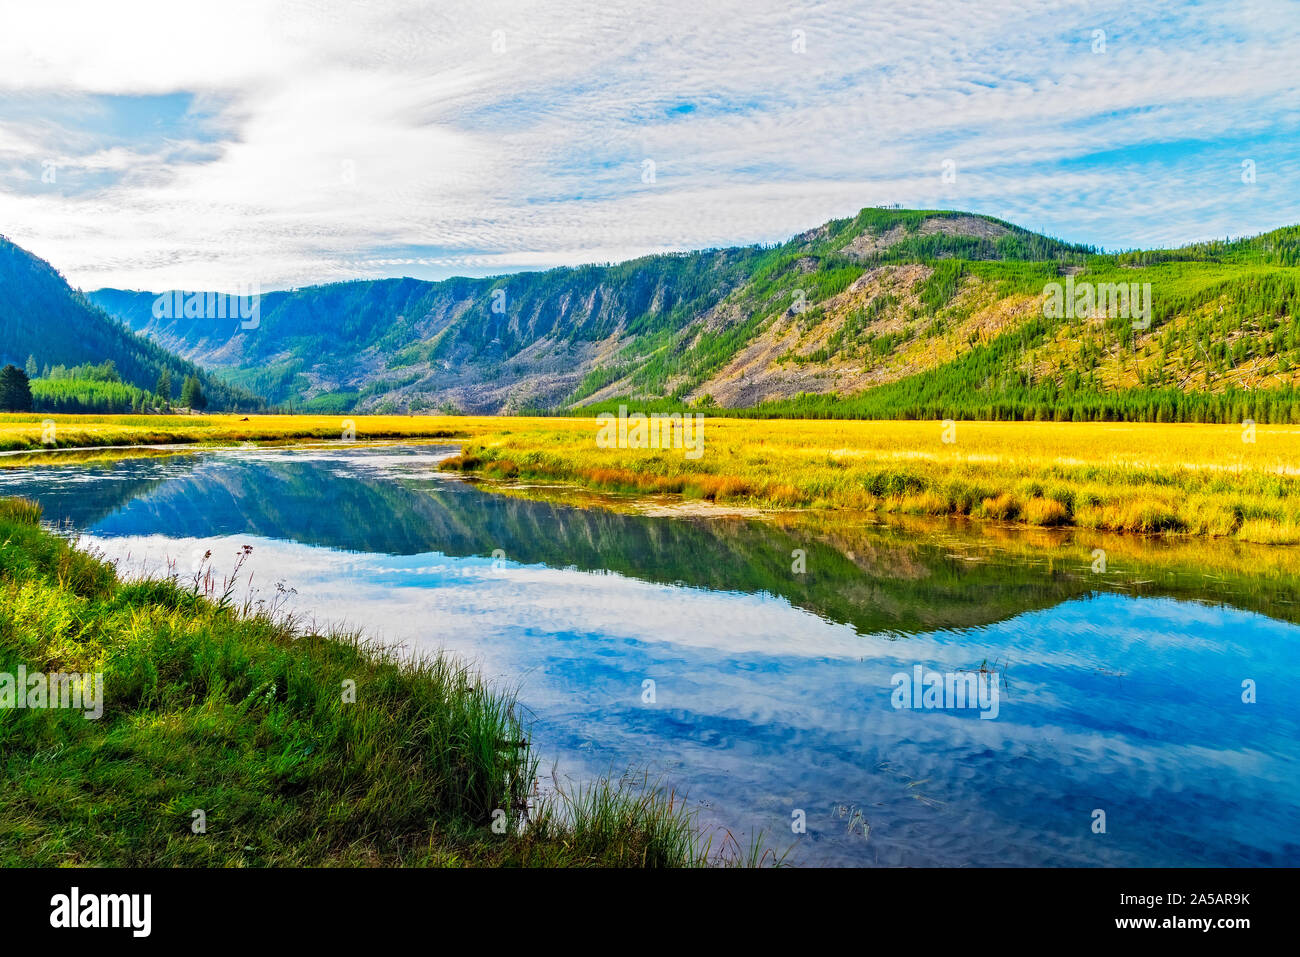 Fluss, der durch das Tal des goldenen gelb Gras Felder mit Wald Berge bei bewölktem Himmel mit hellen blauen abgedeckt. Spiegelnde Wasser. Stockfoto